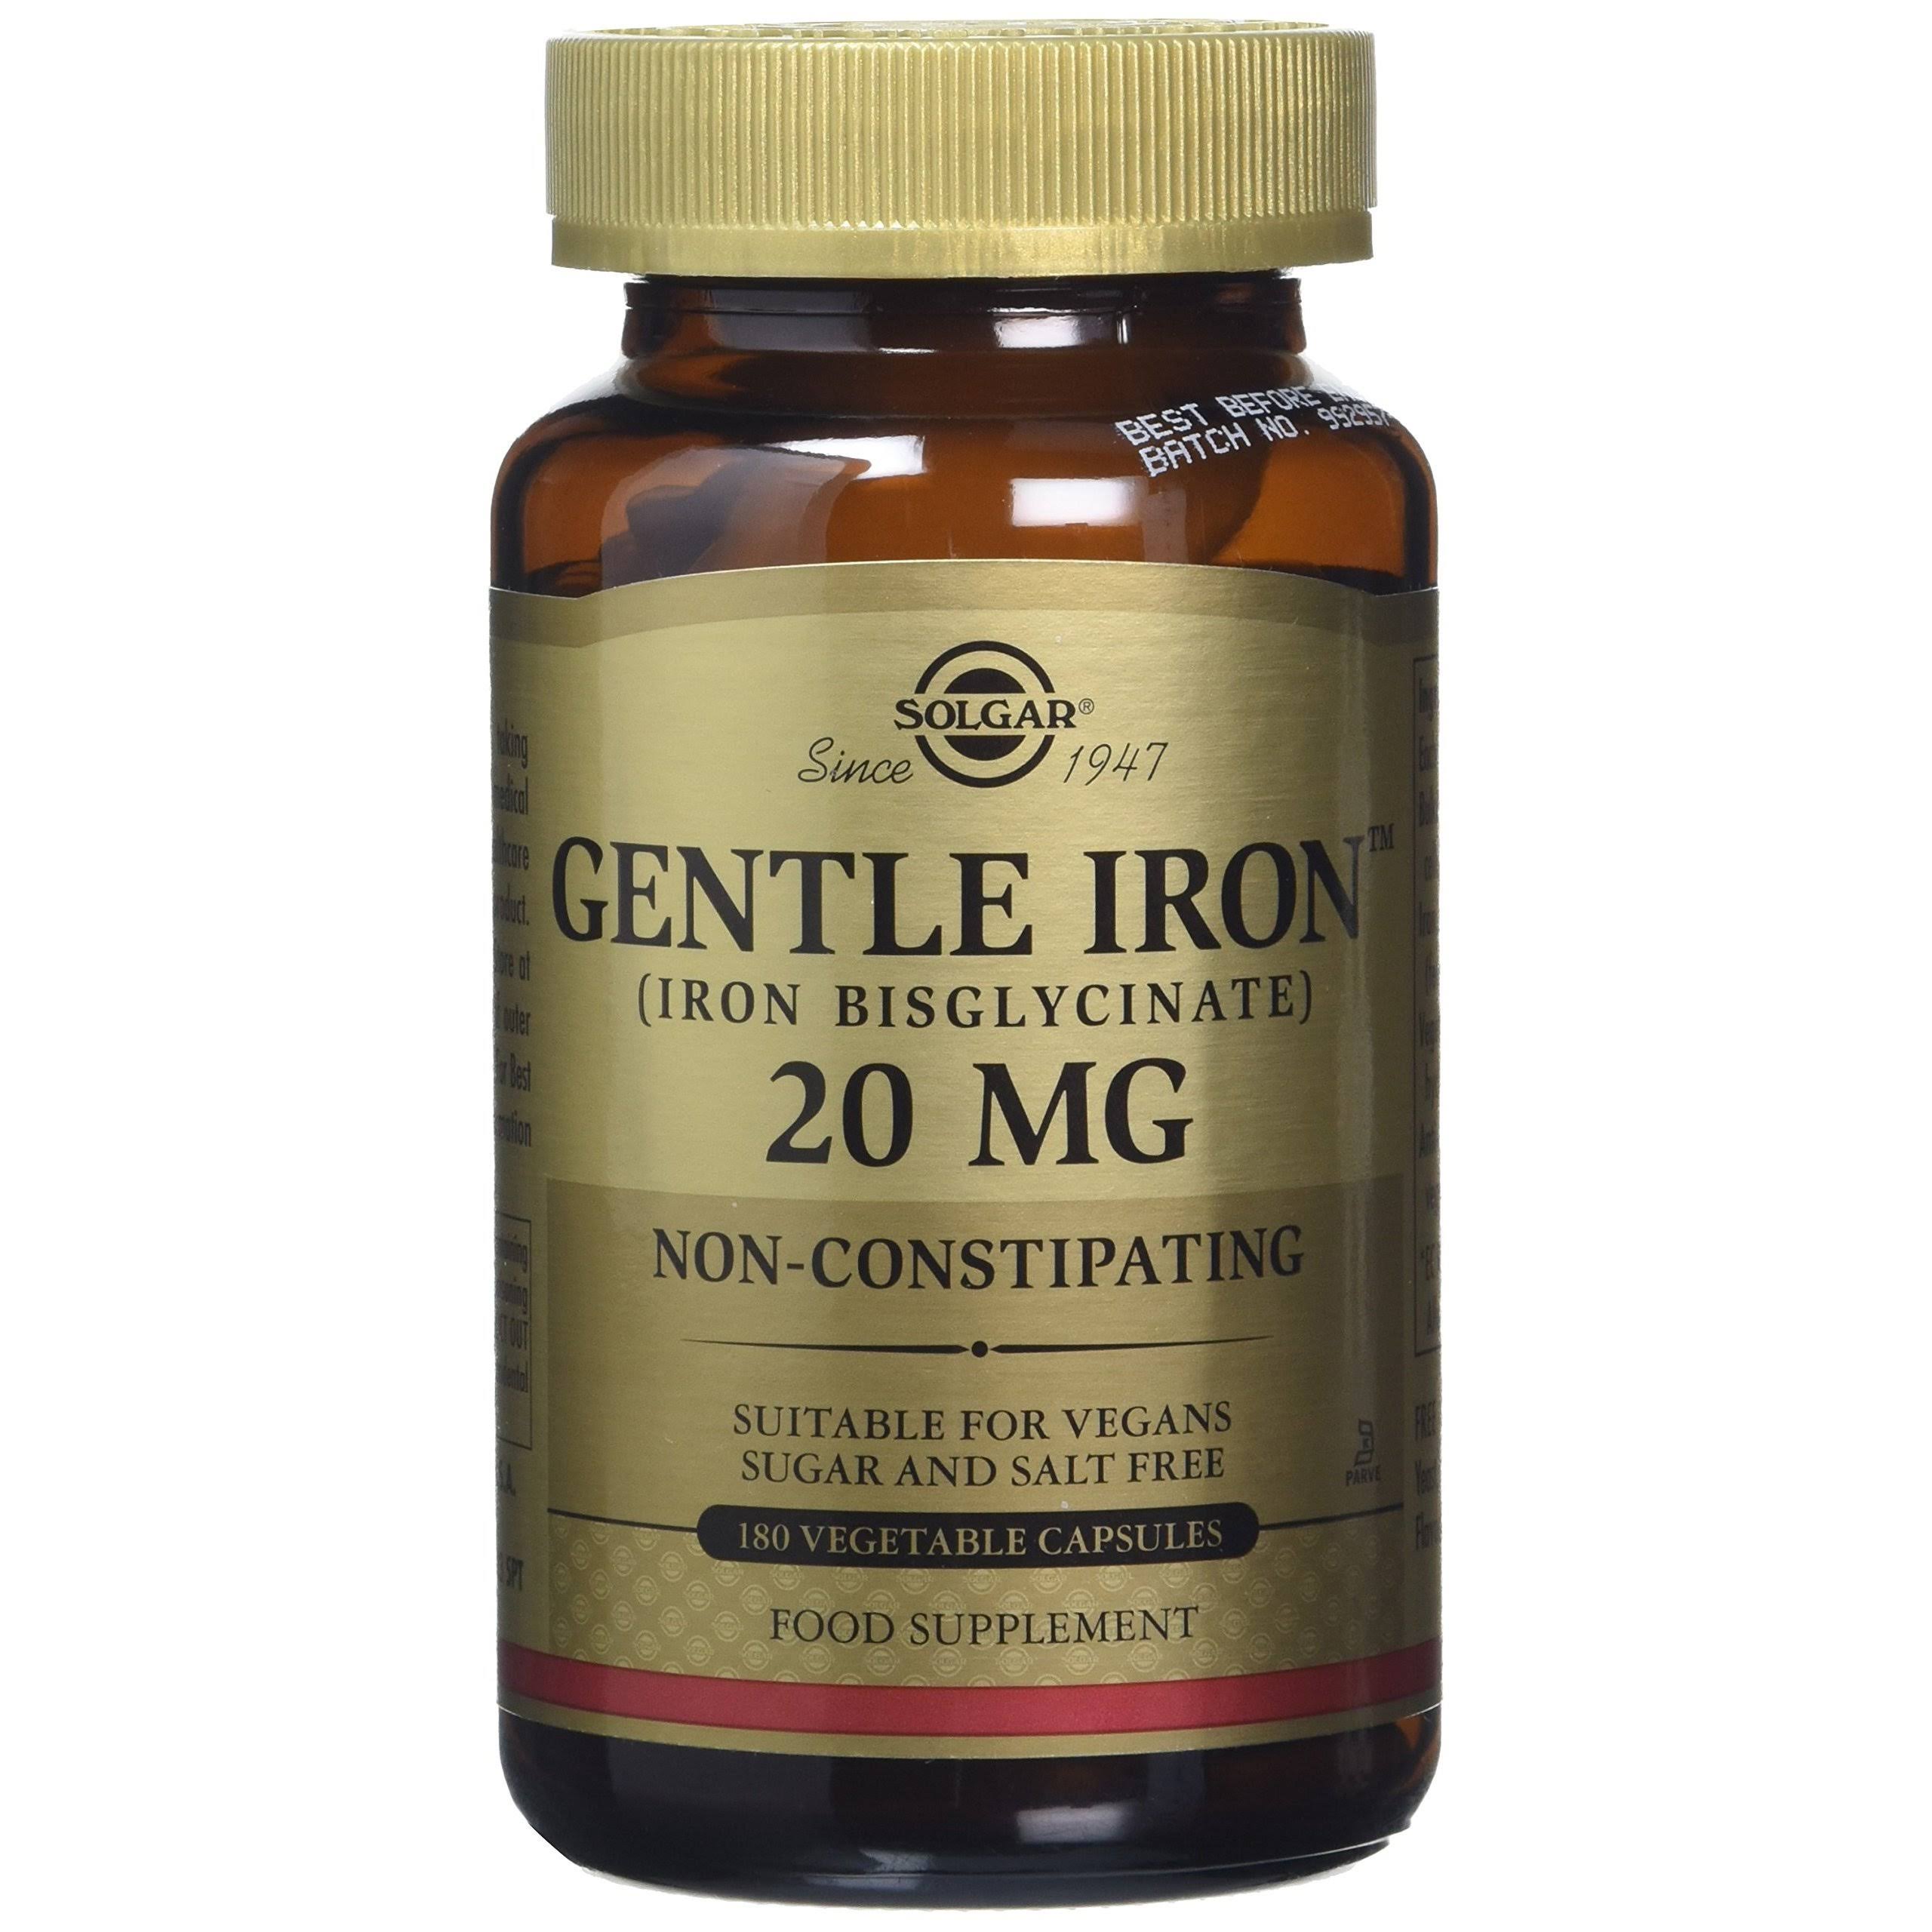 Solgar Gentle Iron - 25 mg, 180 Vegetable Capsules